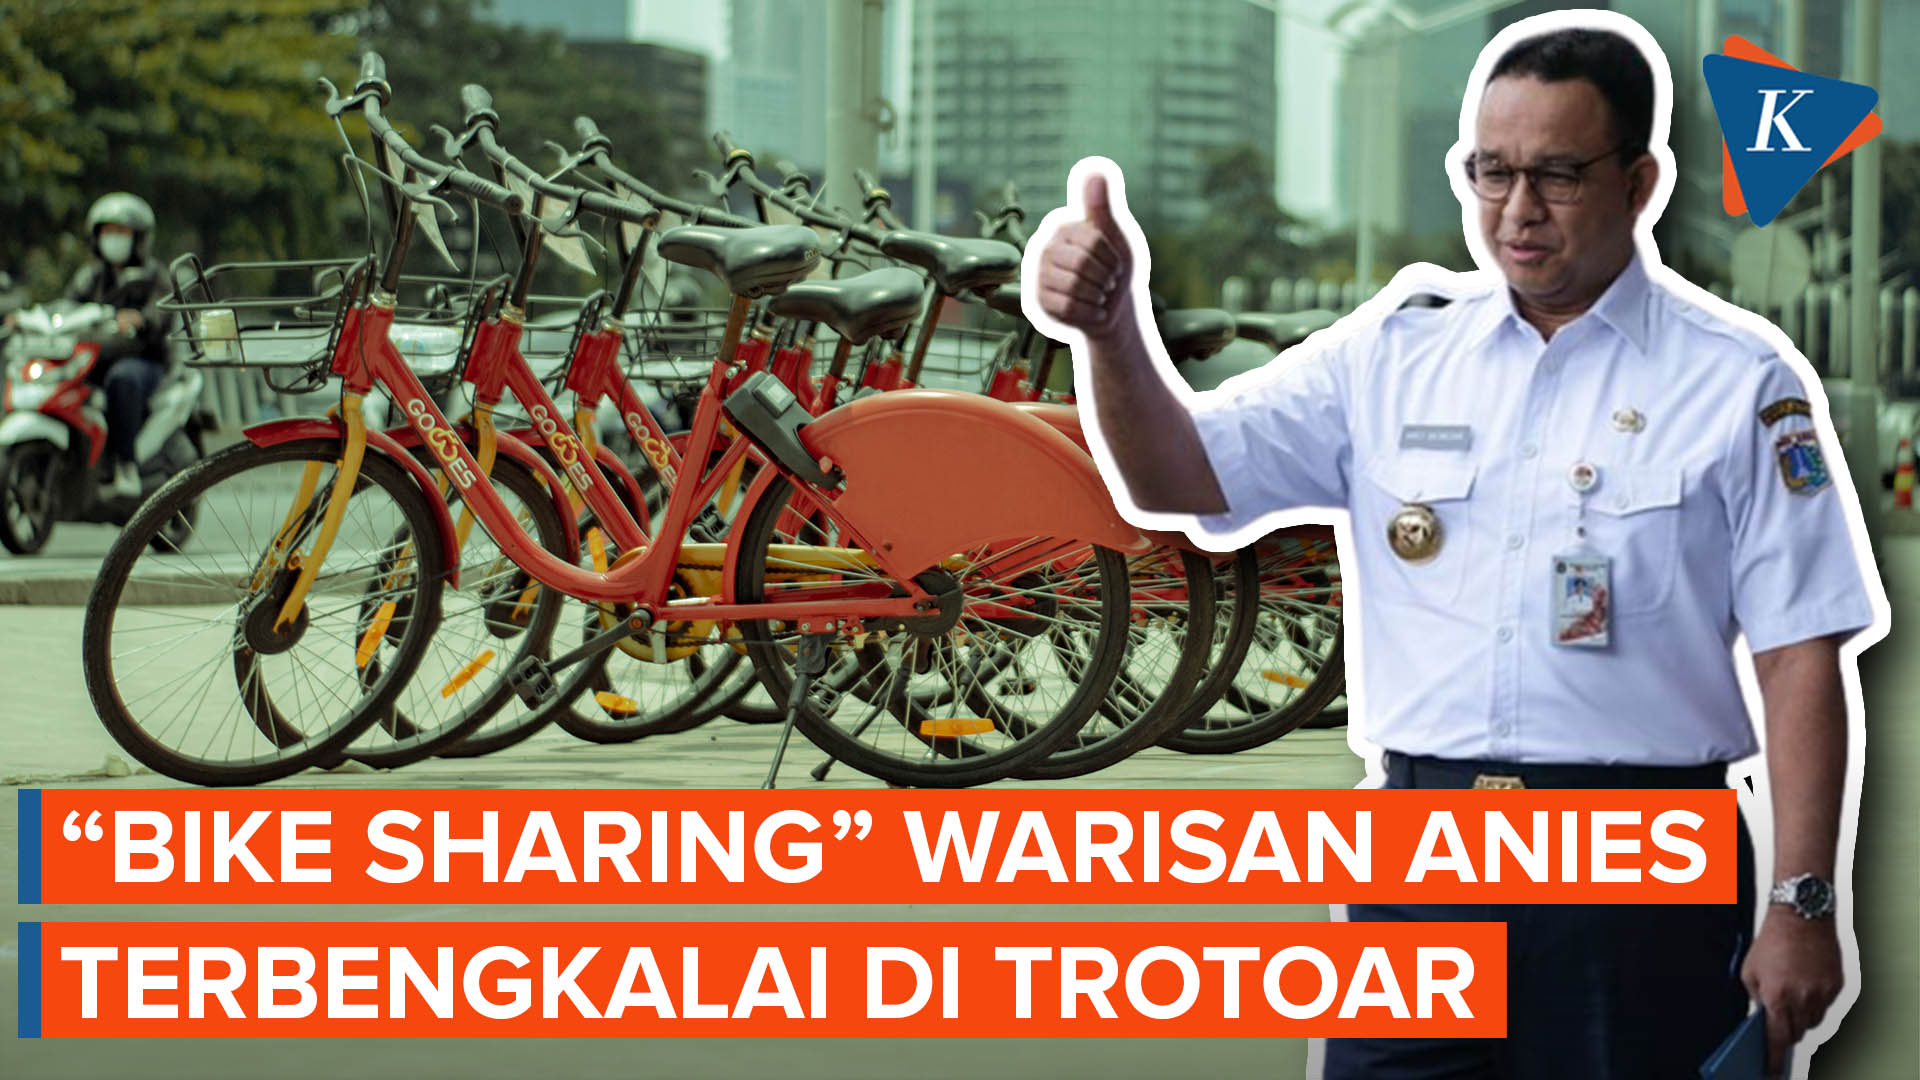 Layanan “Bike Sharing” Era Anies Terbengkalai, Akankah Berlanjut?